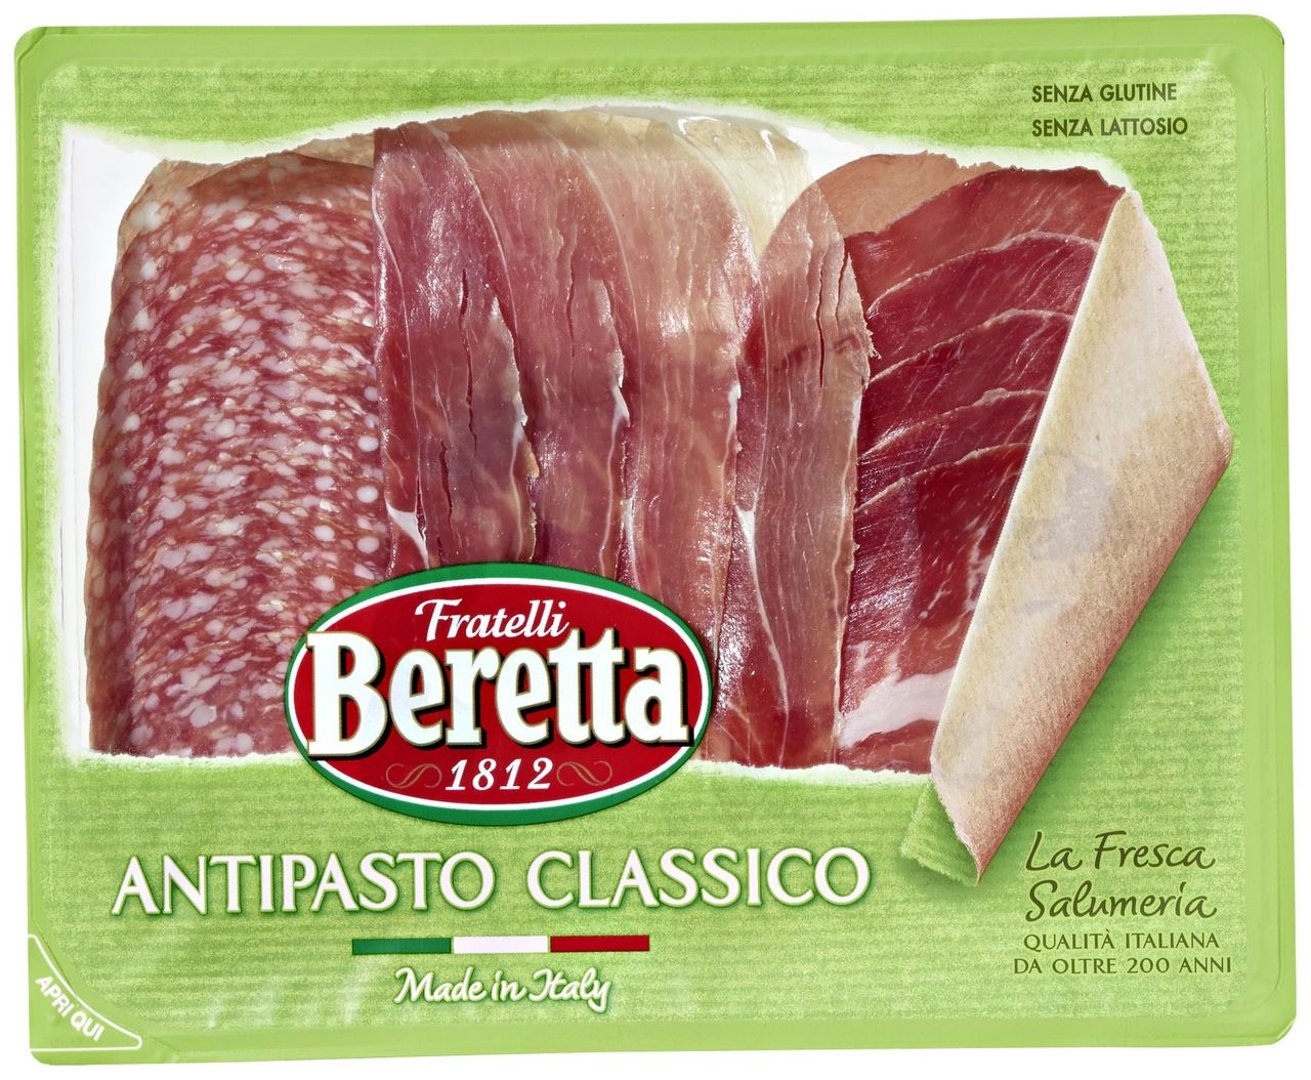 Beretta - Antipasto Classico Mix aus Coppa, Prosciutto Crodo, Salame Milano, geschnitten 140 g Packung